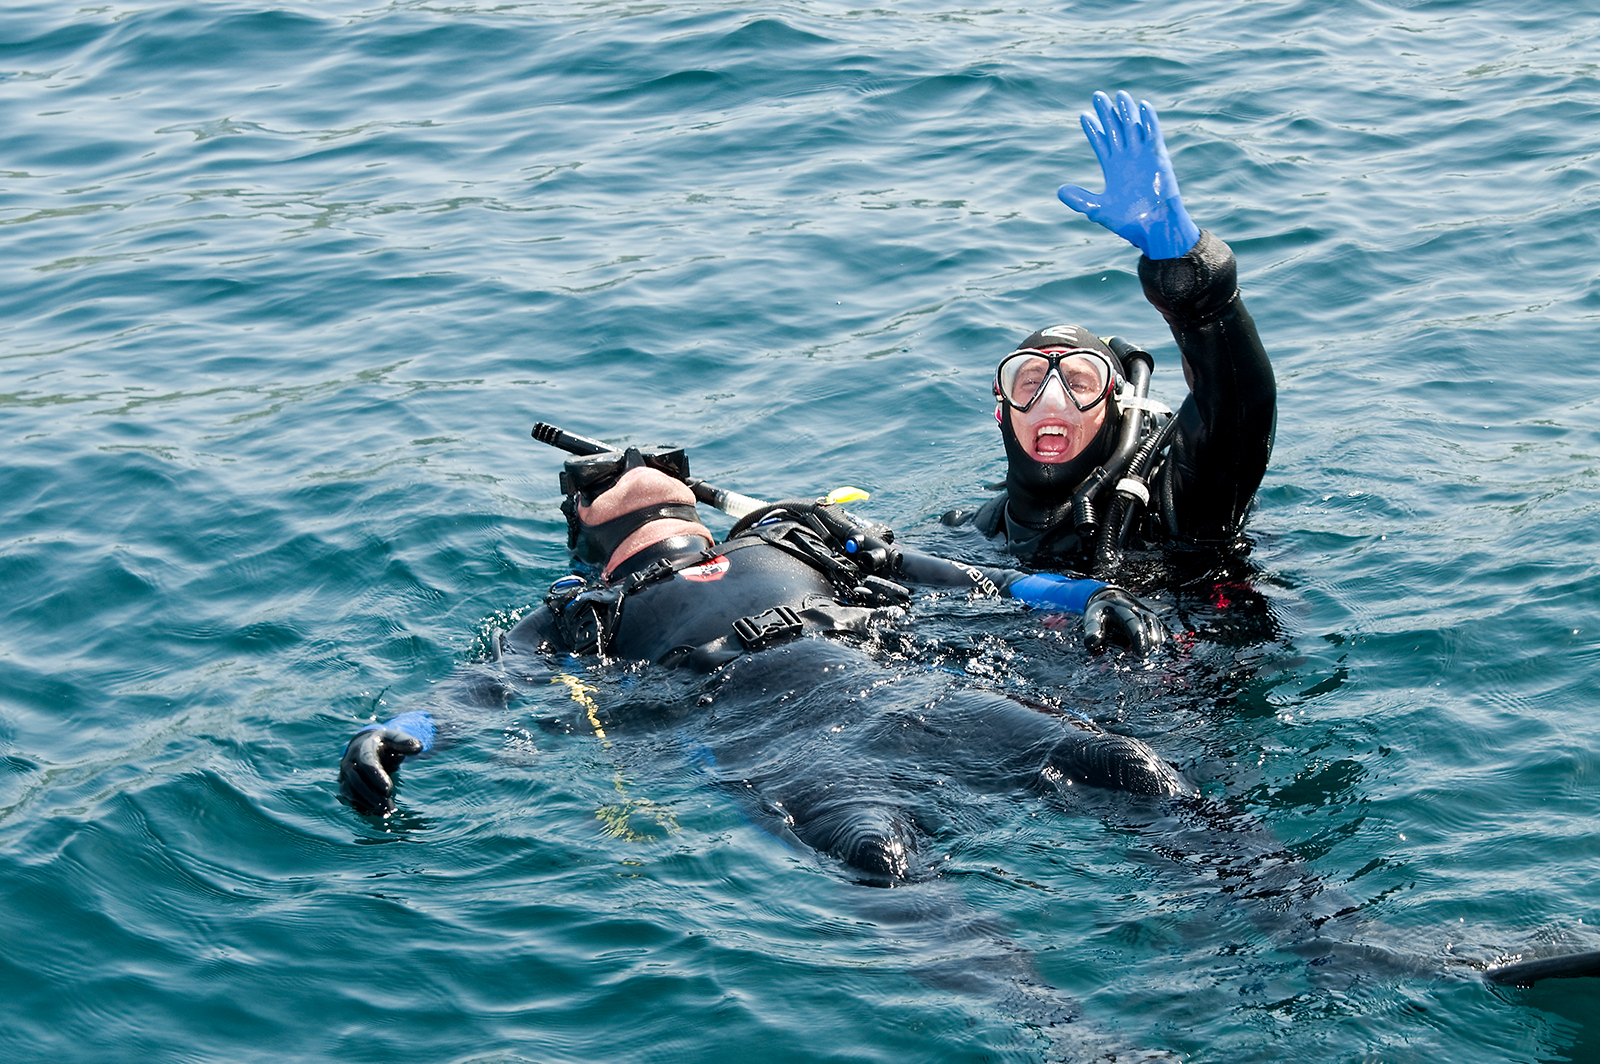 Rescue Diver - Rescue in Water - Scuba Diving - PADI Rescue Diver